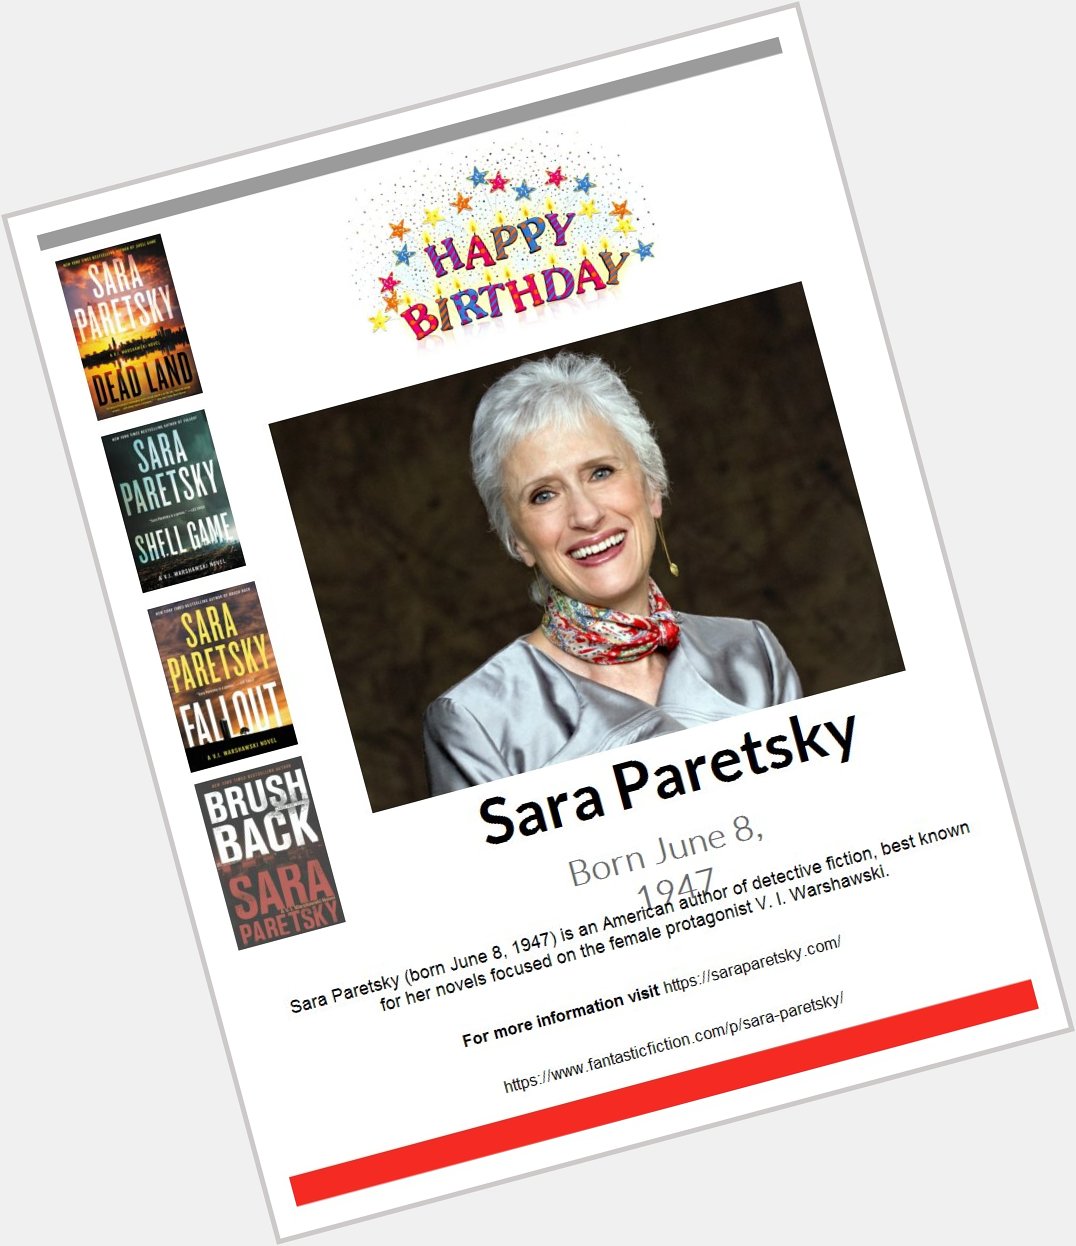 Happy Birthday Sara Paretsky!  